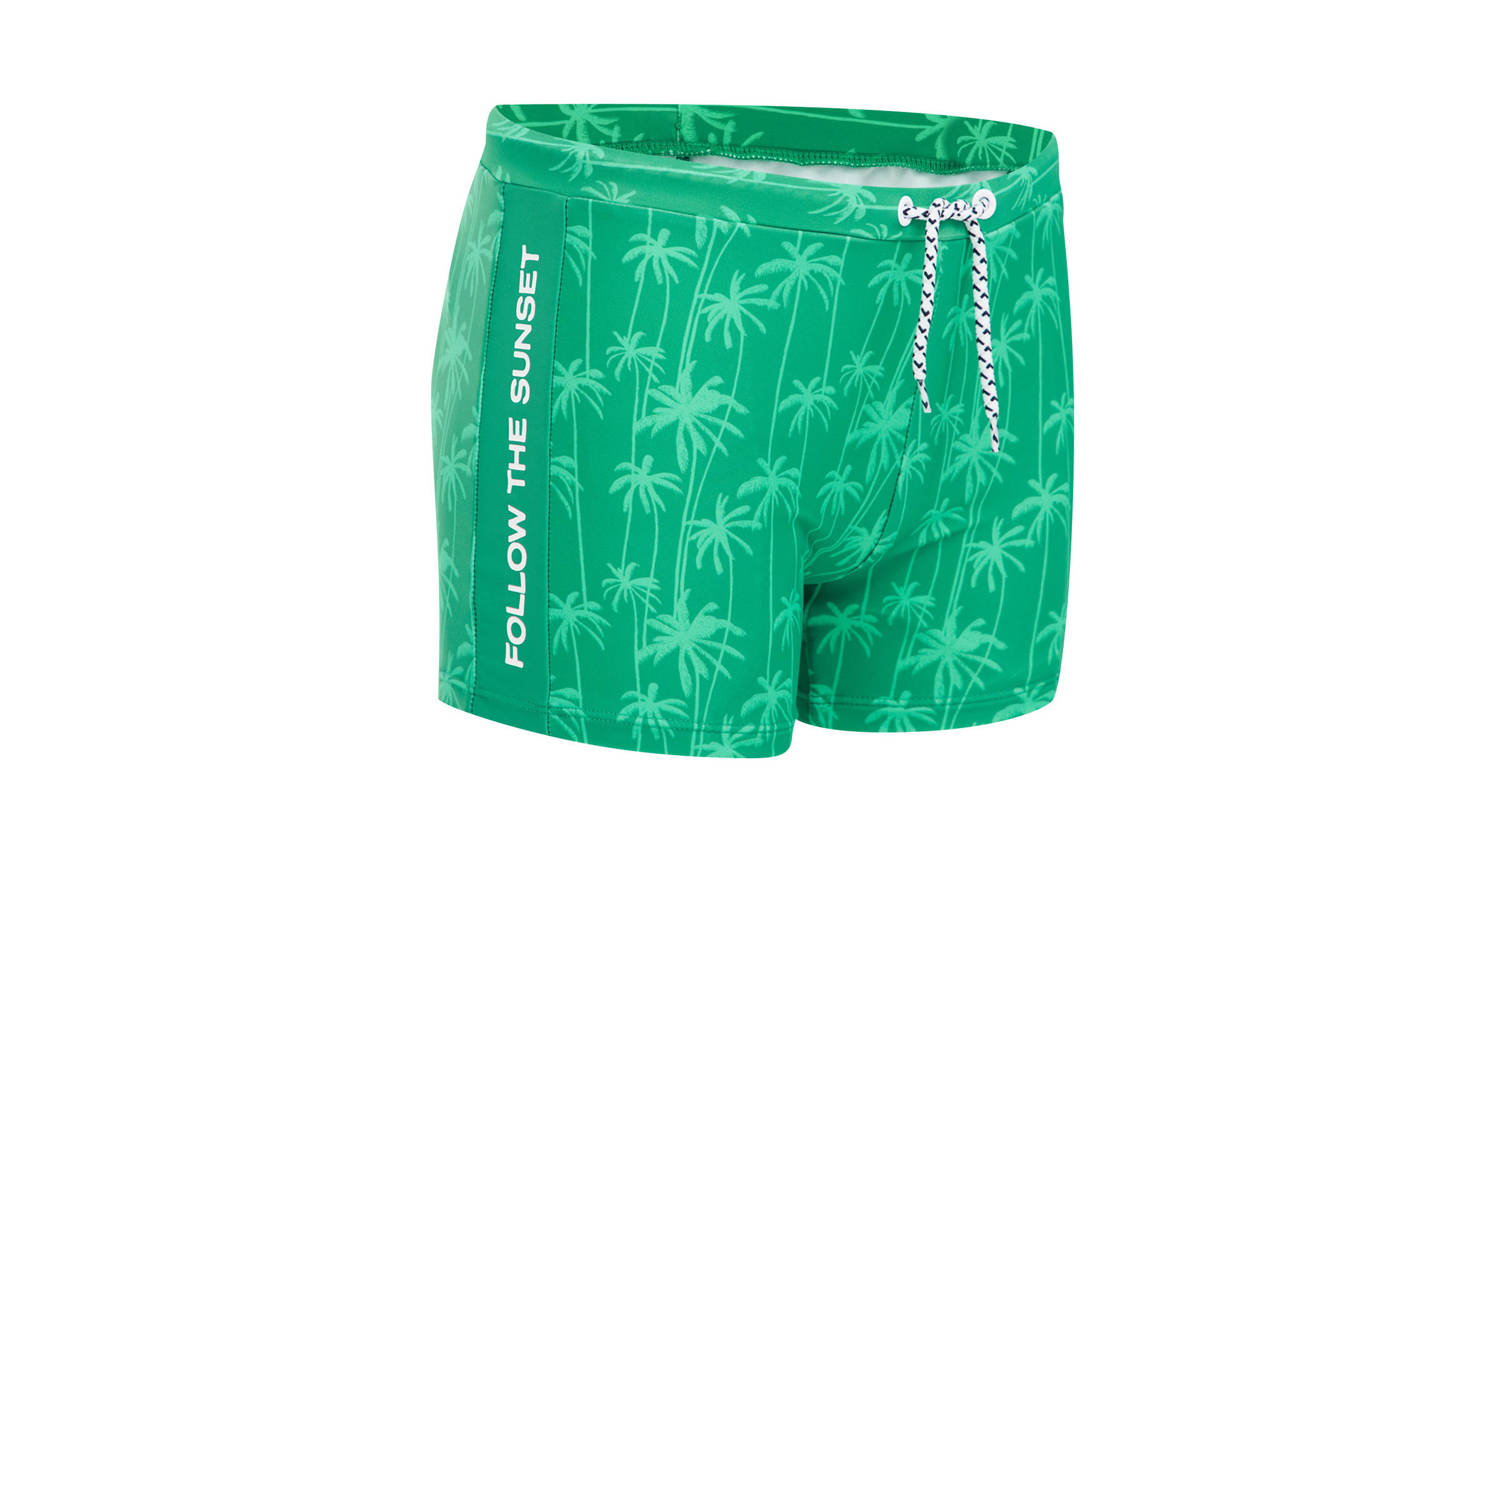 WE Fashion zwemboxer groen